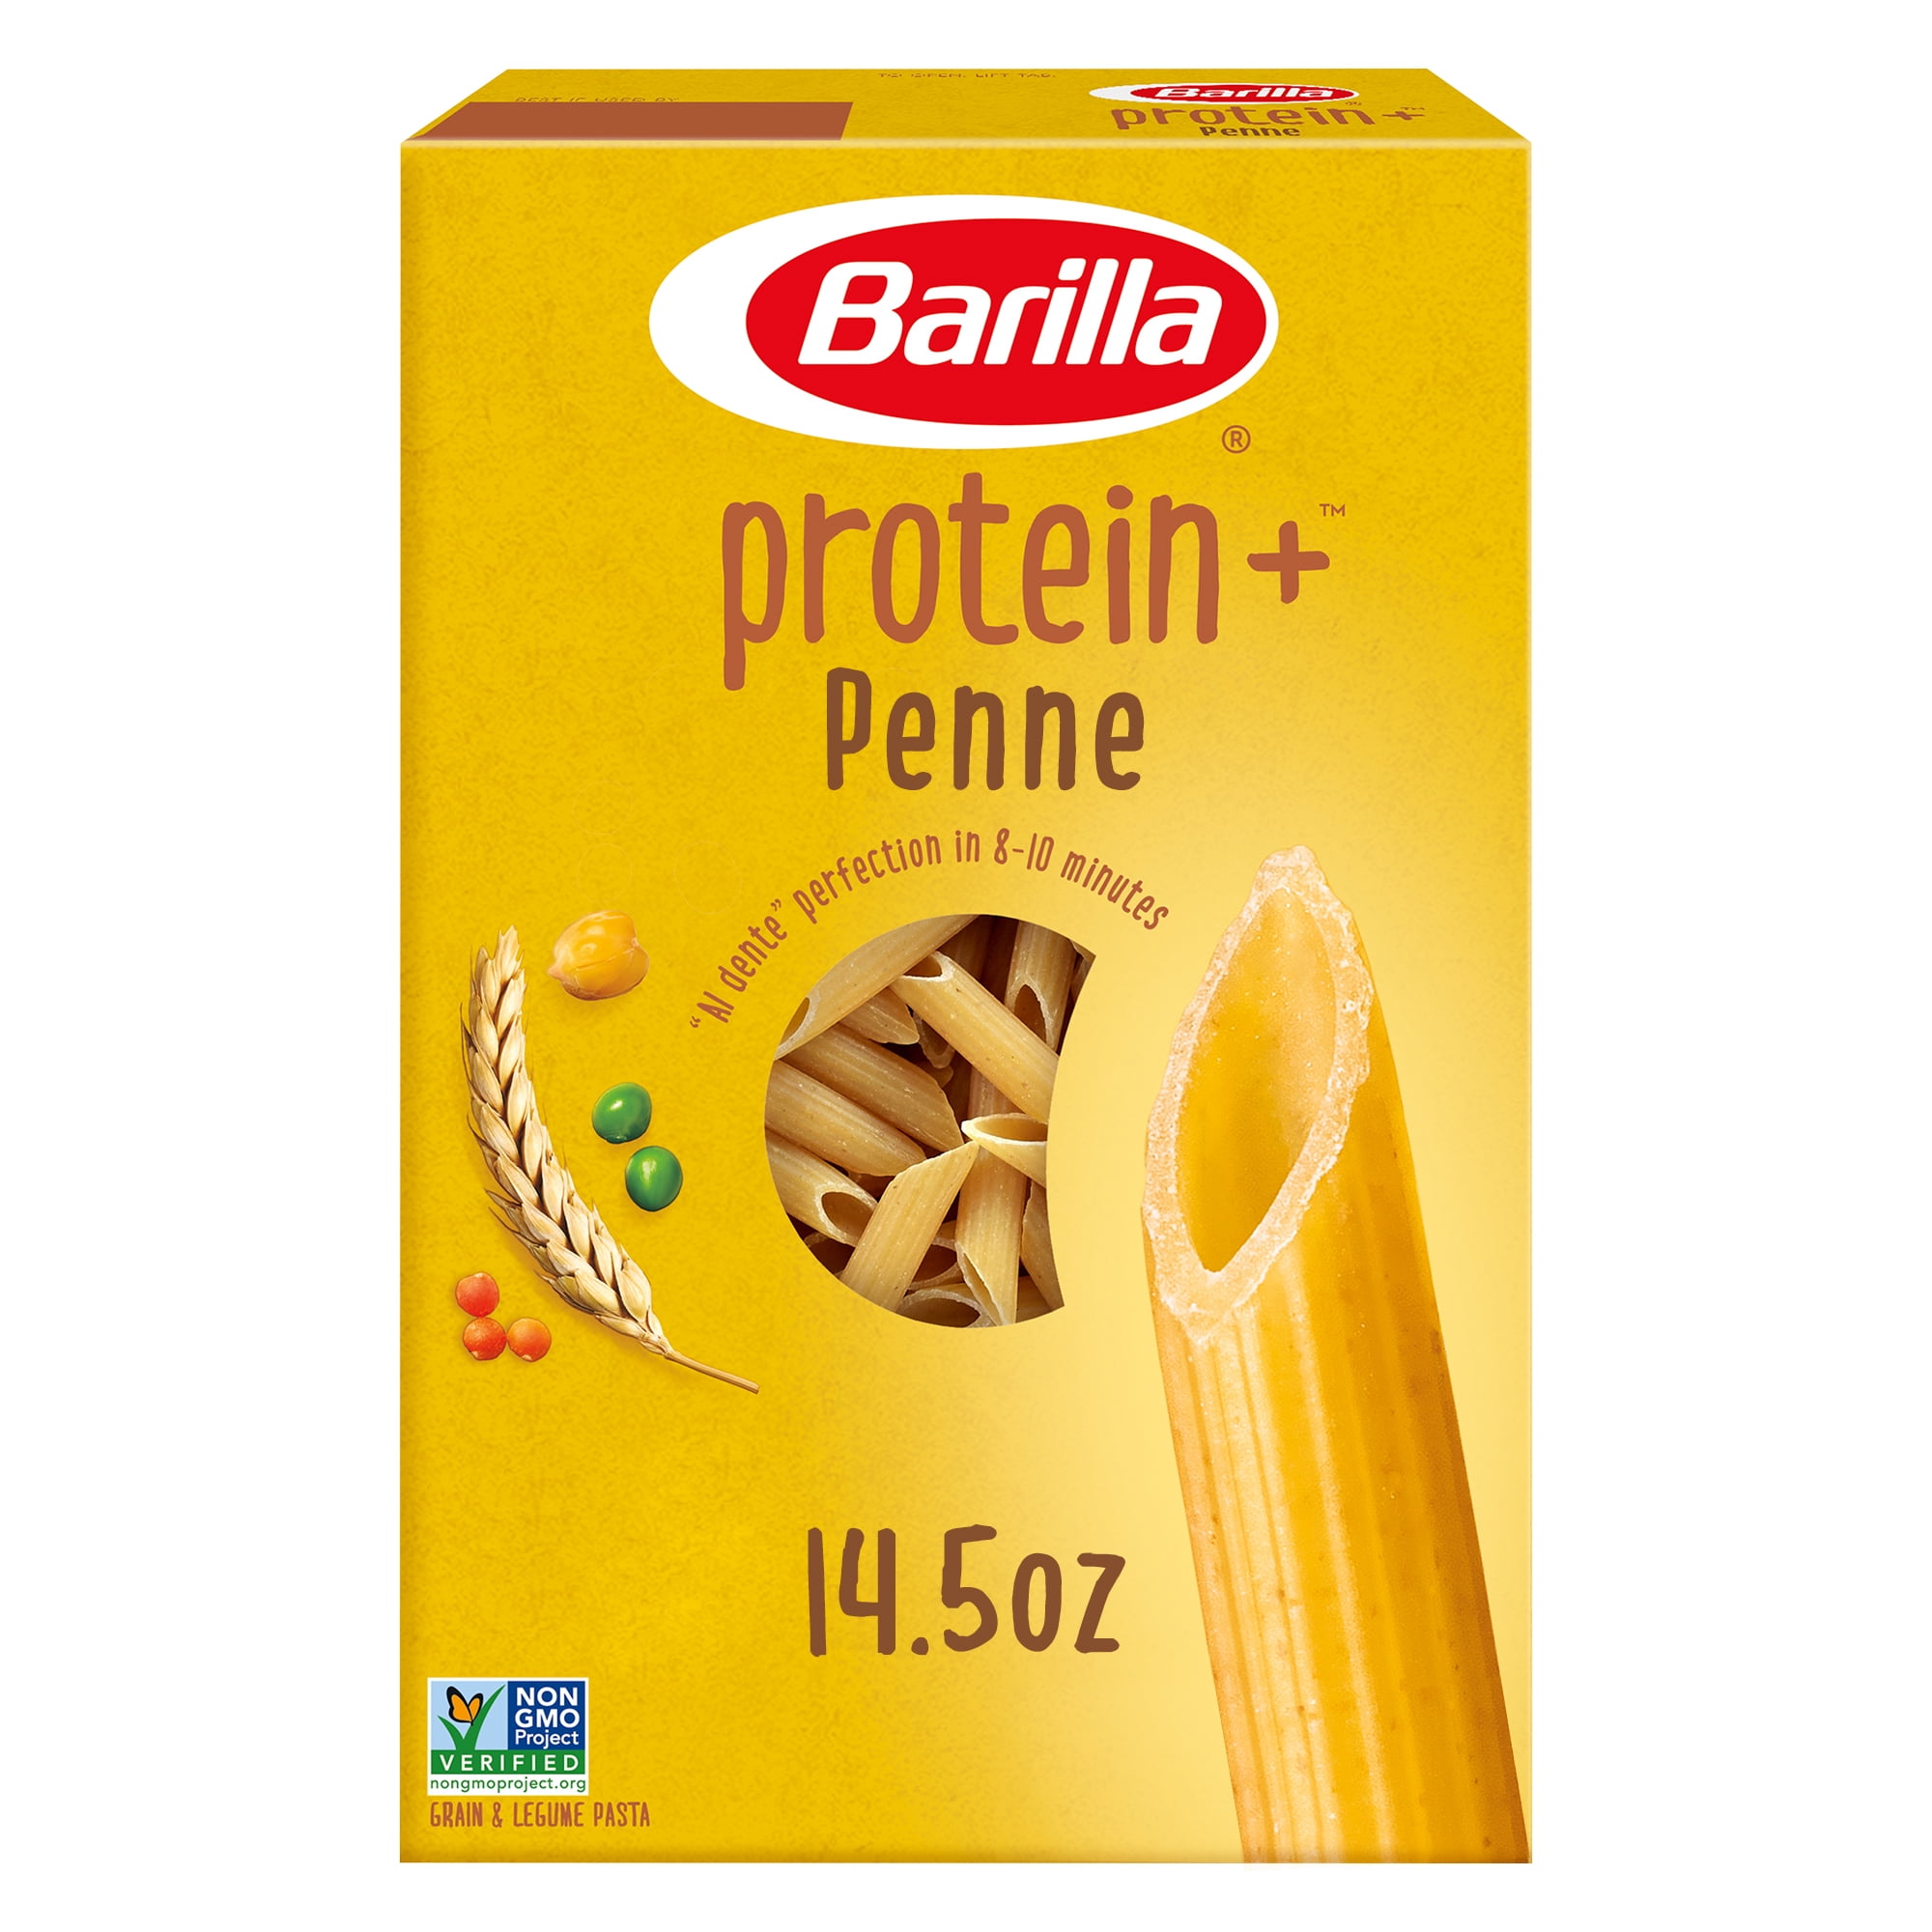 Barilla Protein+ Pasta Penne, oz 14.5